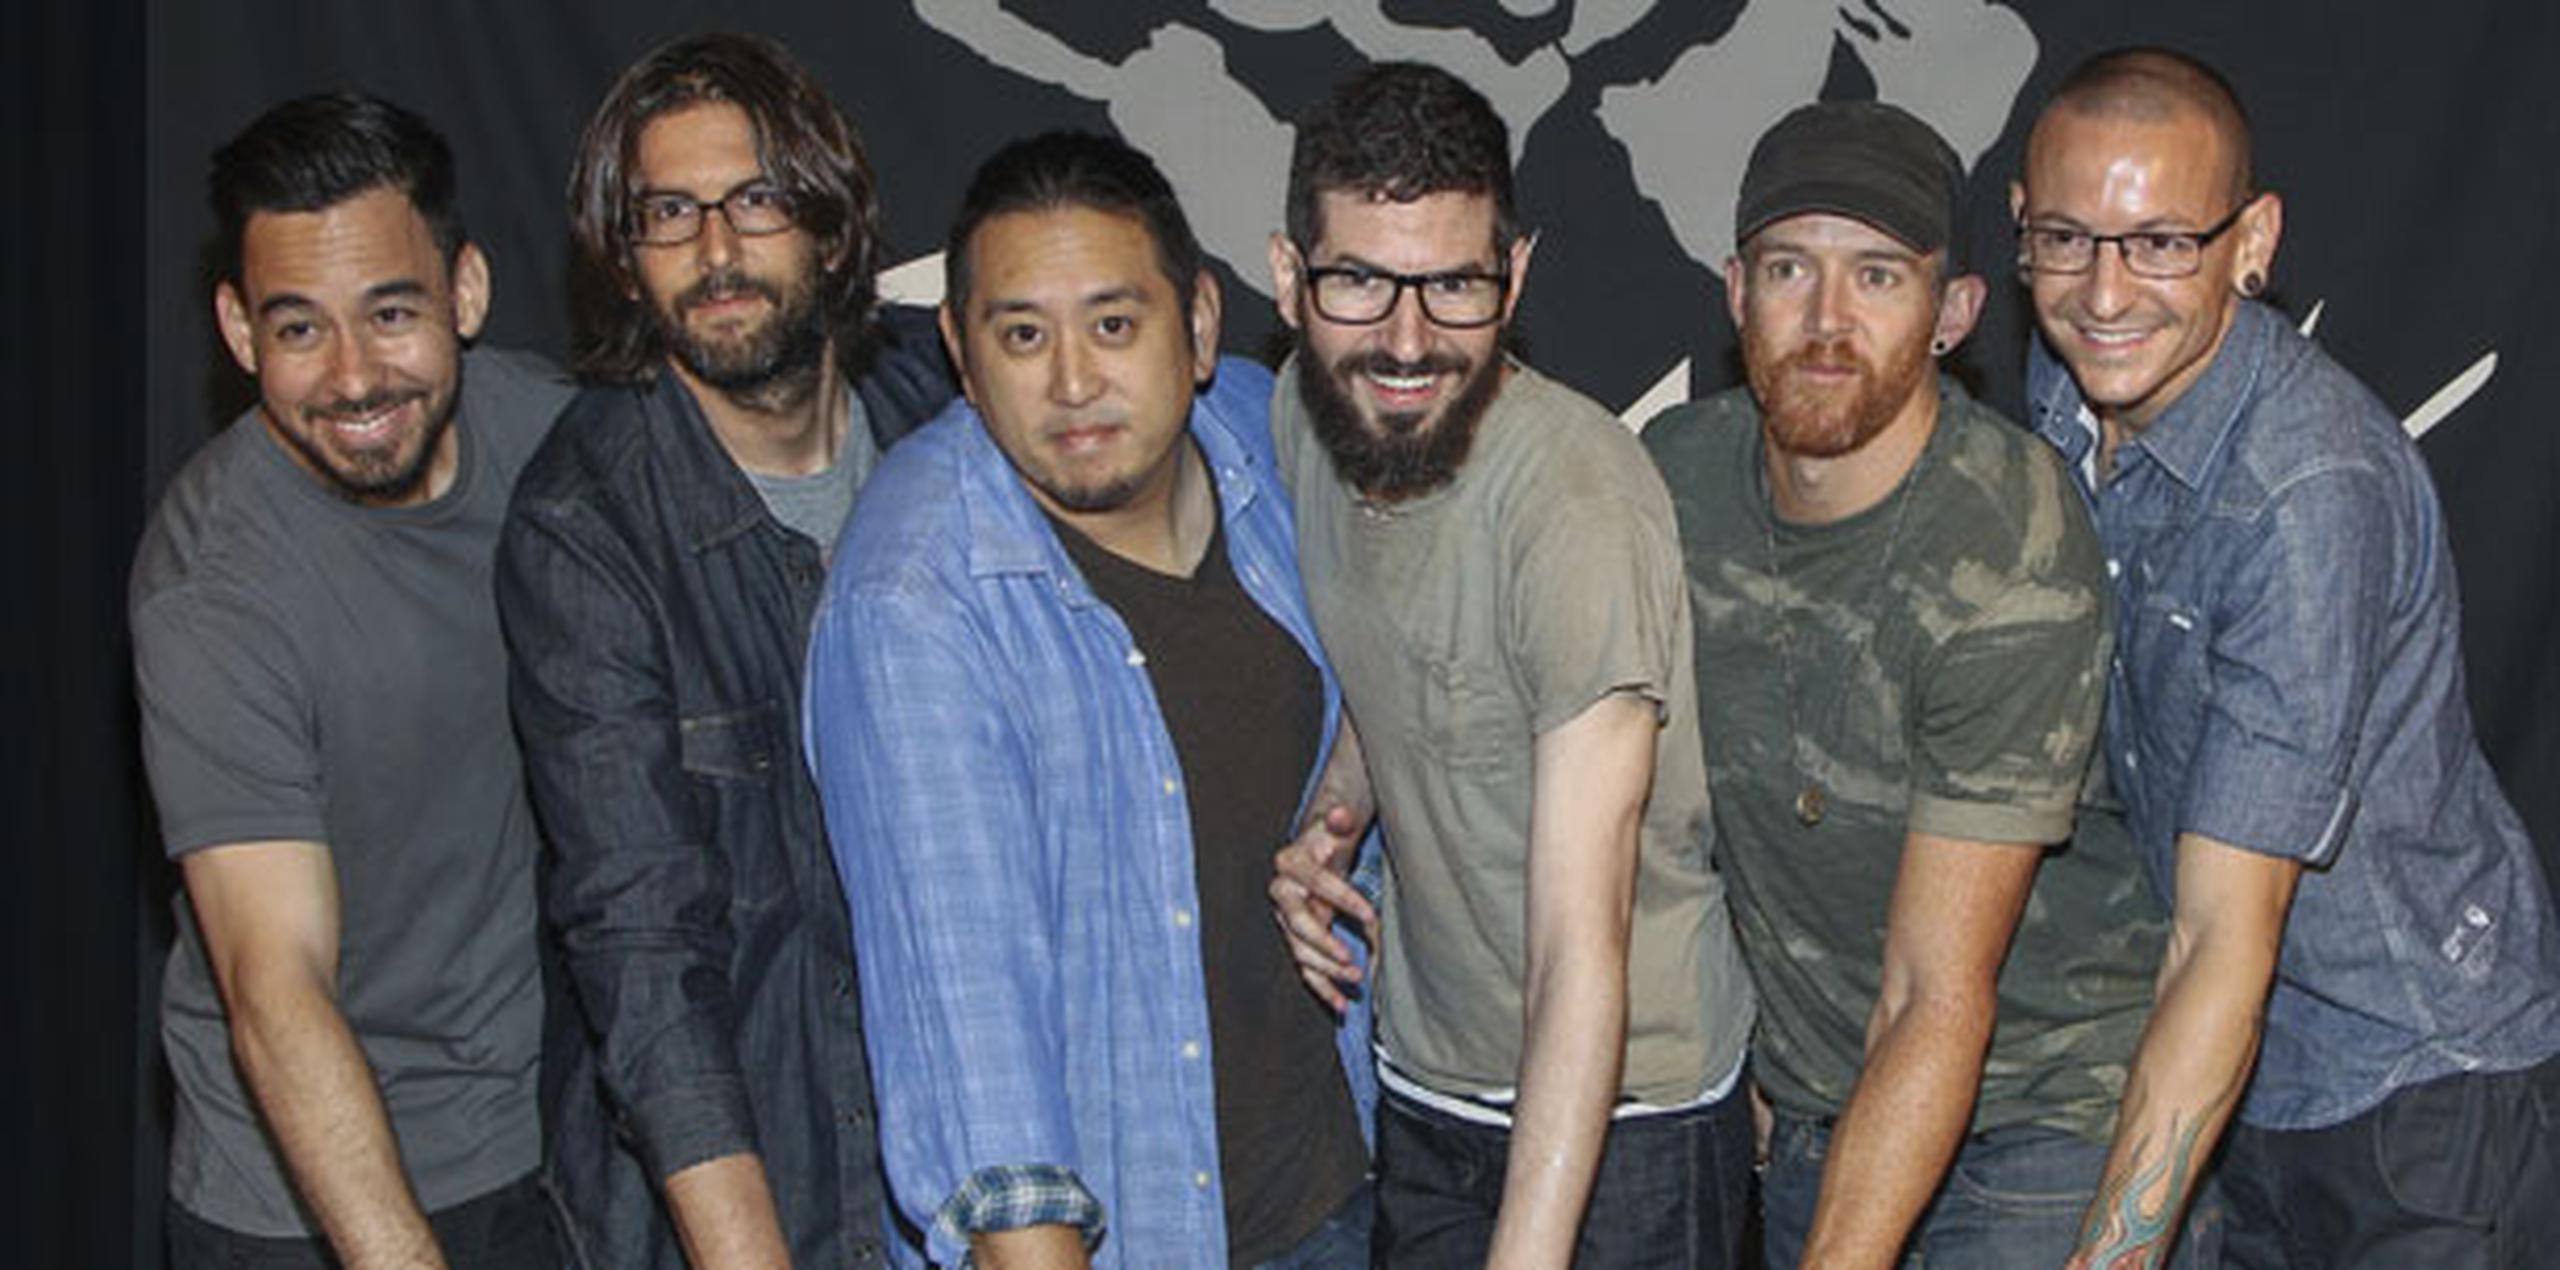 La gira que tenía prevista Linkin Park por Norteamérica fue cancelada tras la muerte de Bennington por ahorcamiento. (Archivo)